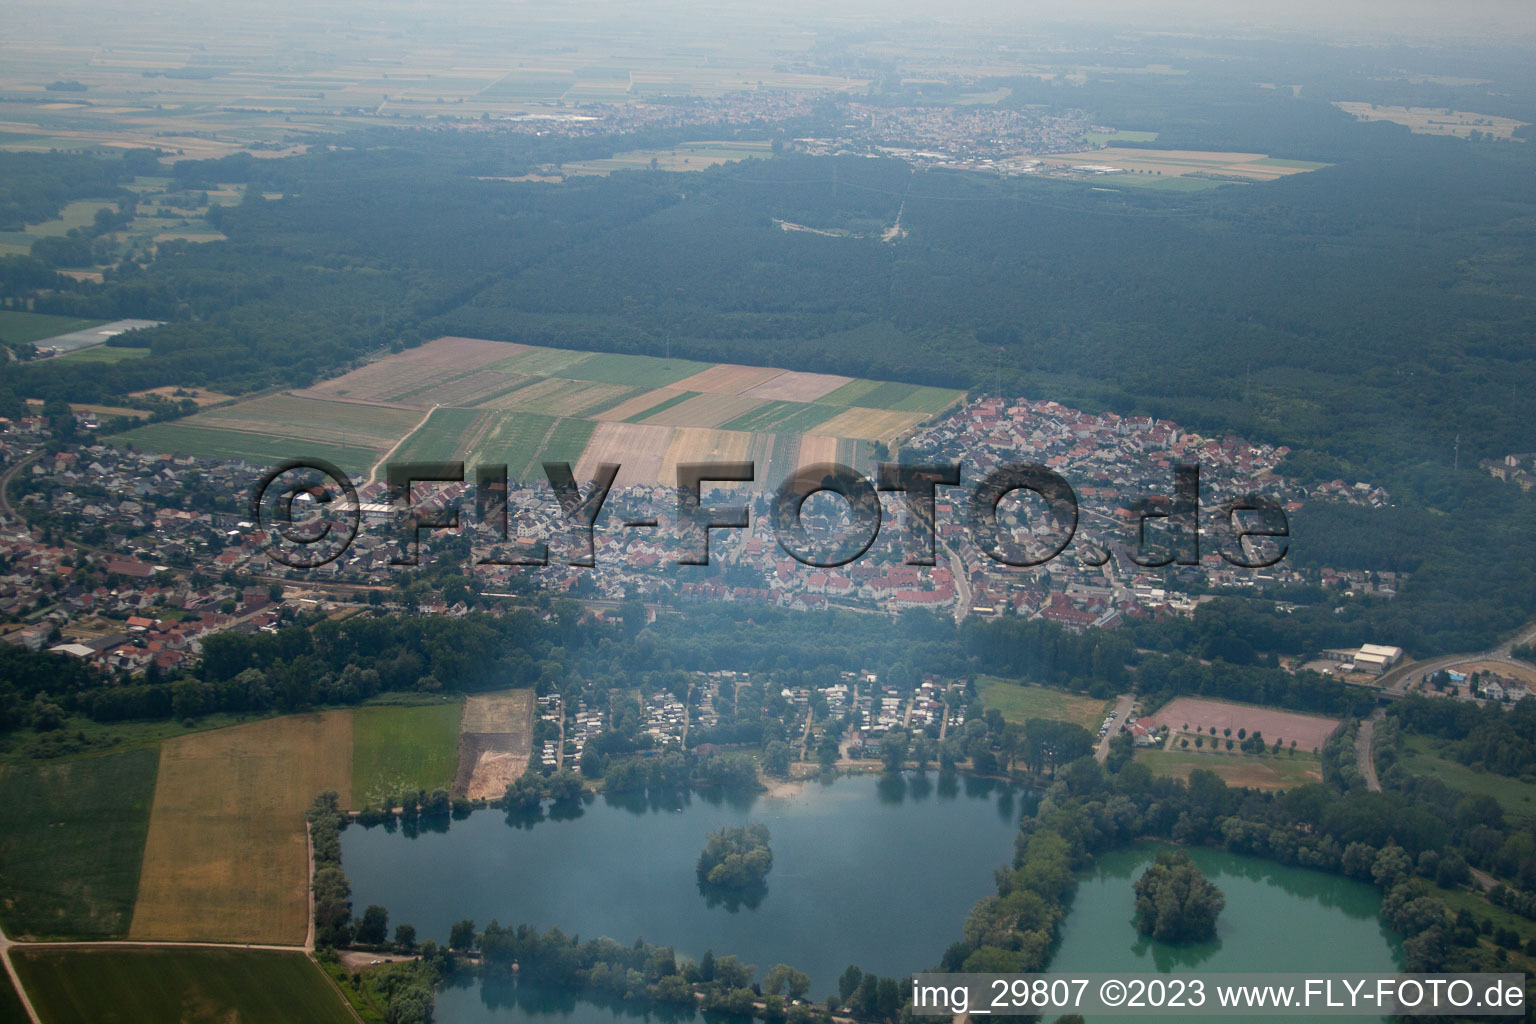 Quartier Sondernheim in Germersheim dans le département Rhénanie-Palatinat, Allemagne vue d'en haut